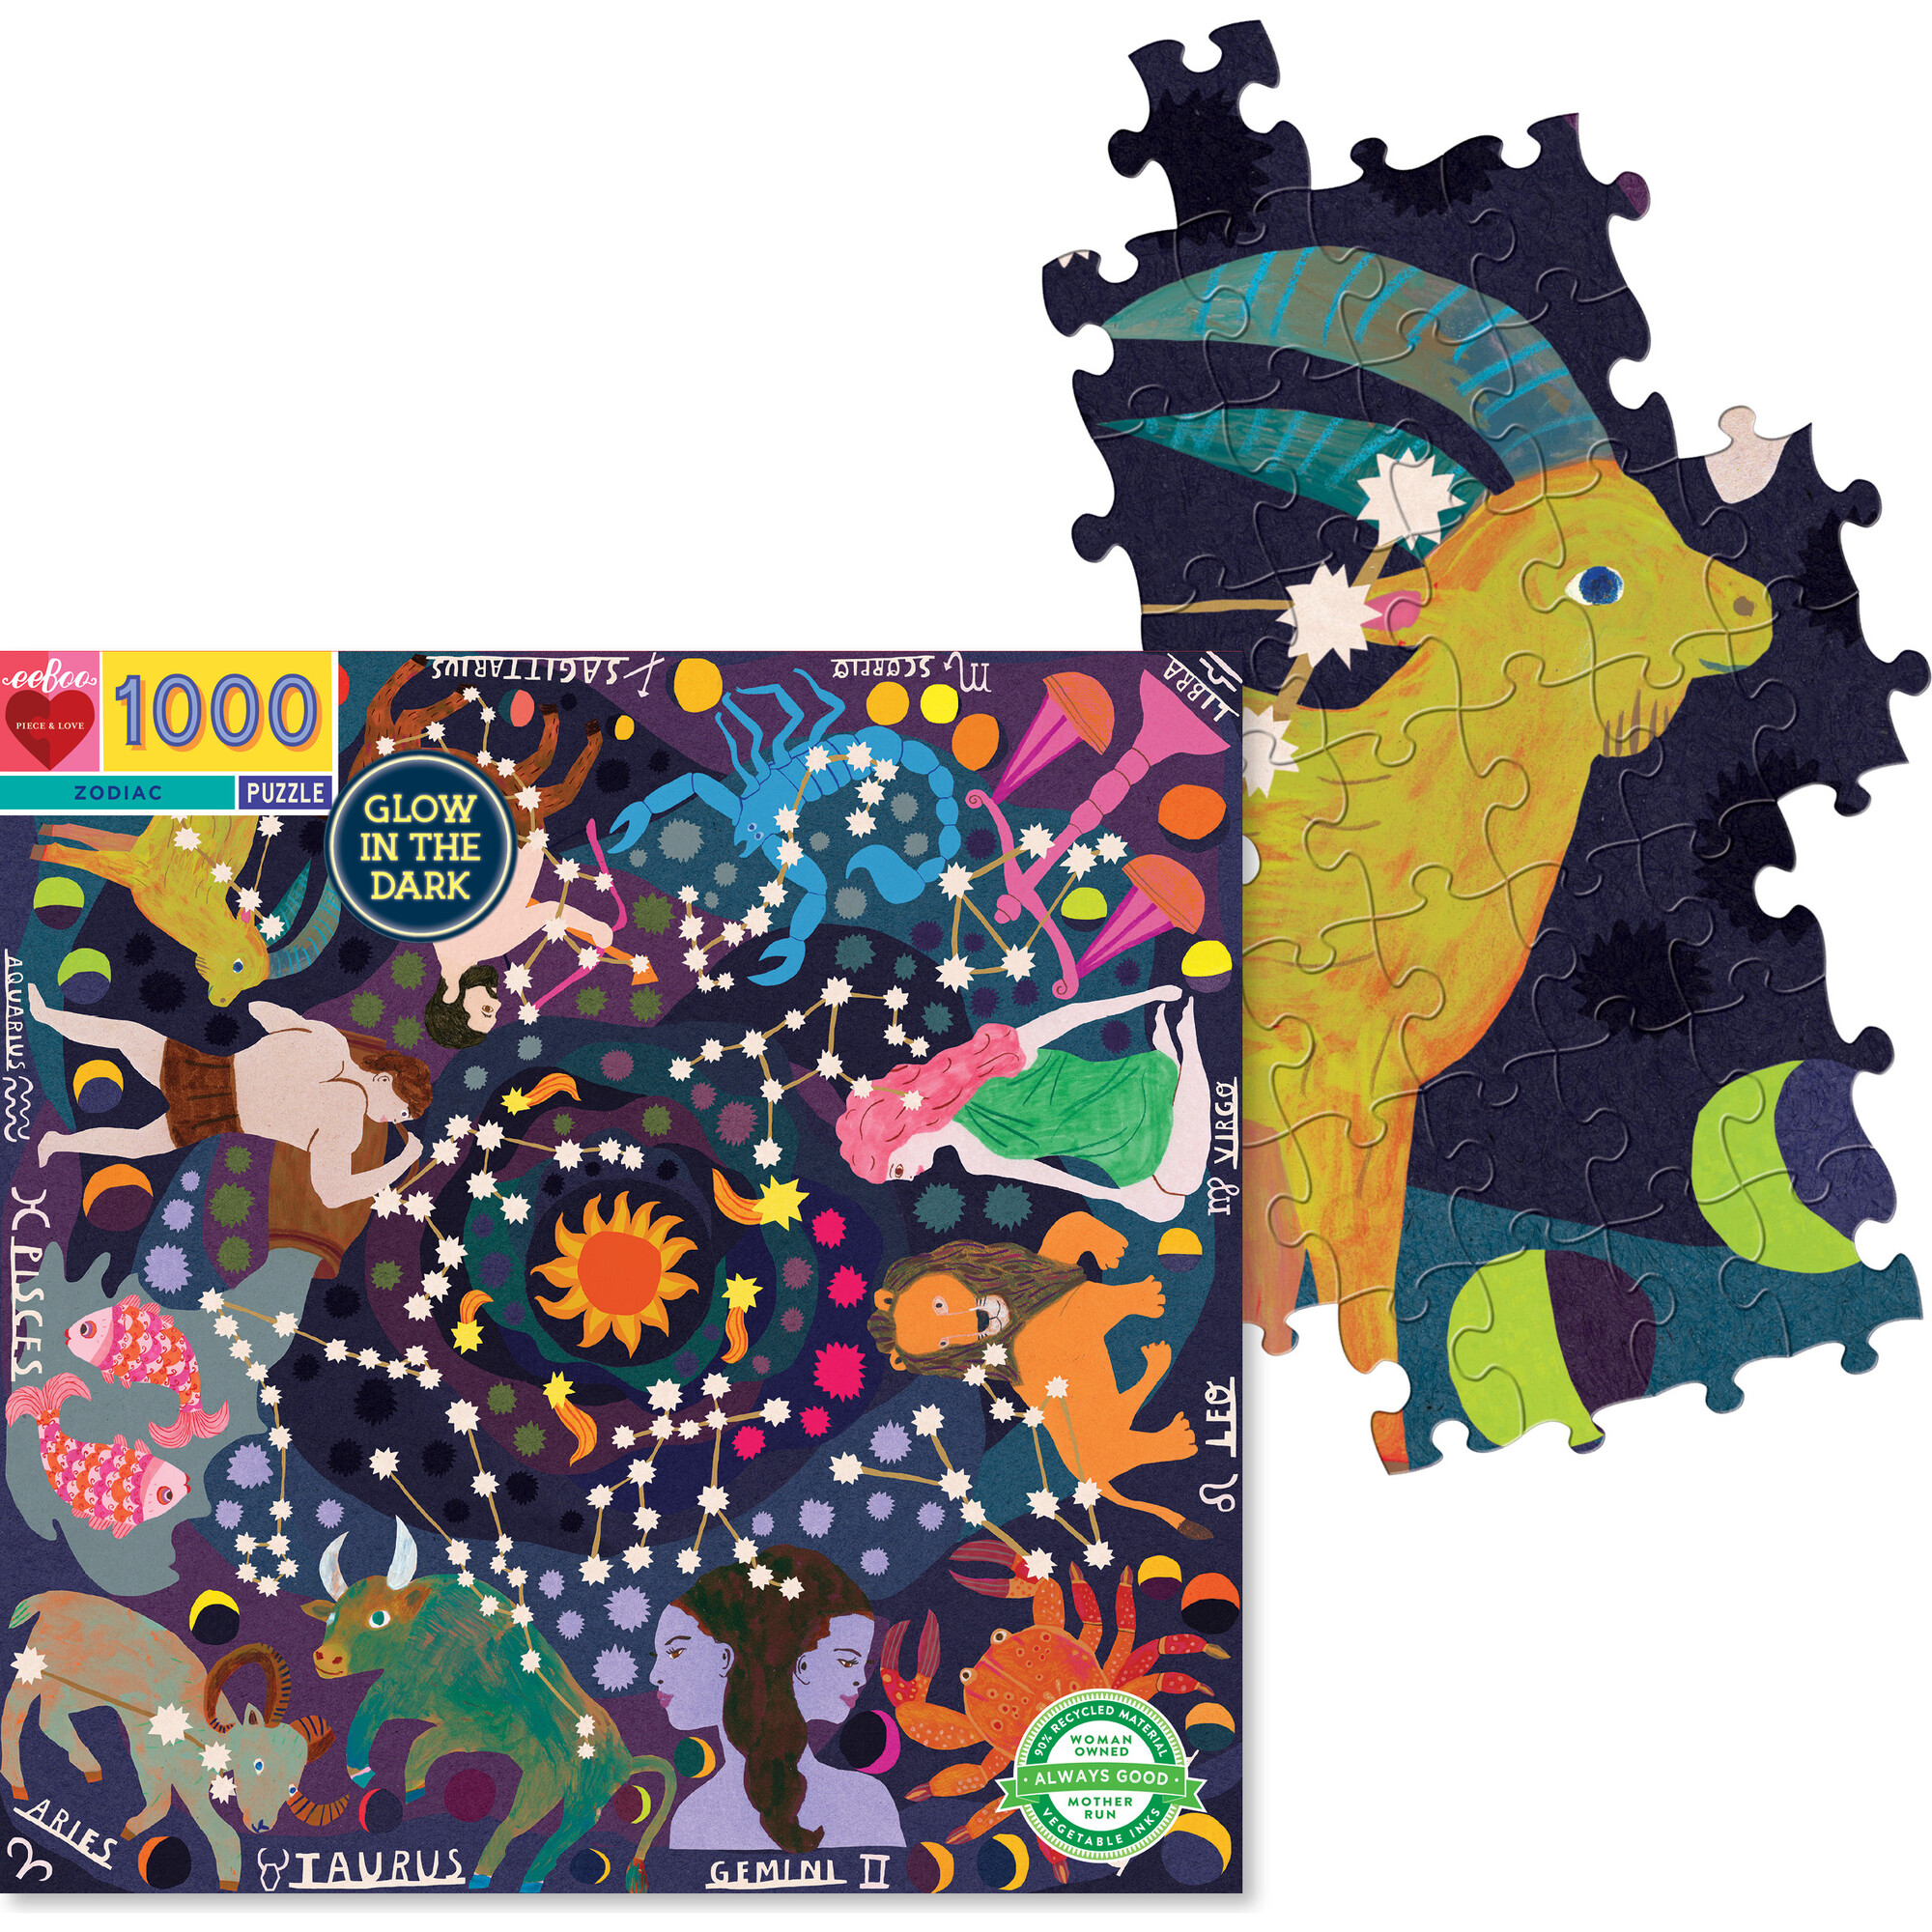 Zodiac 1000-Piece Puzzle